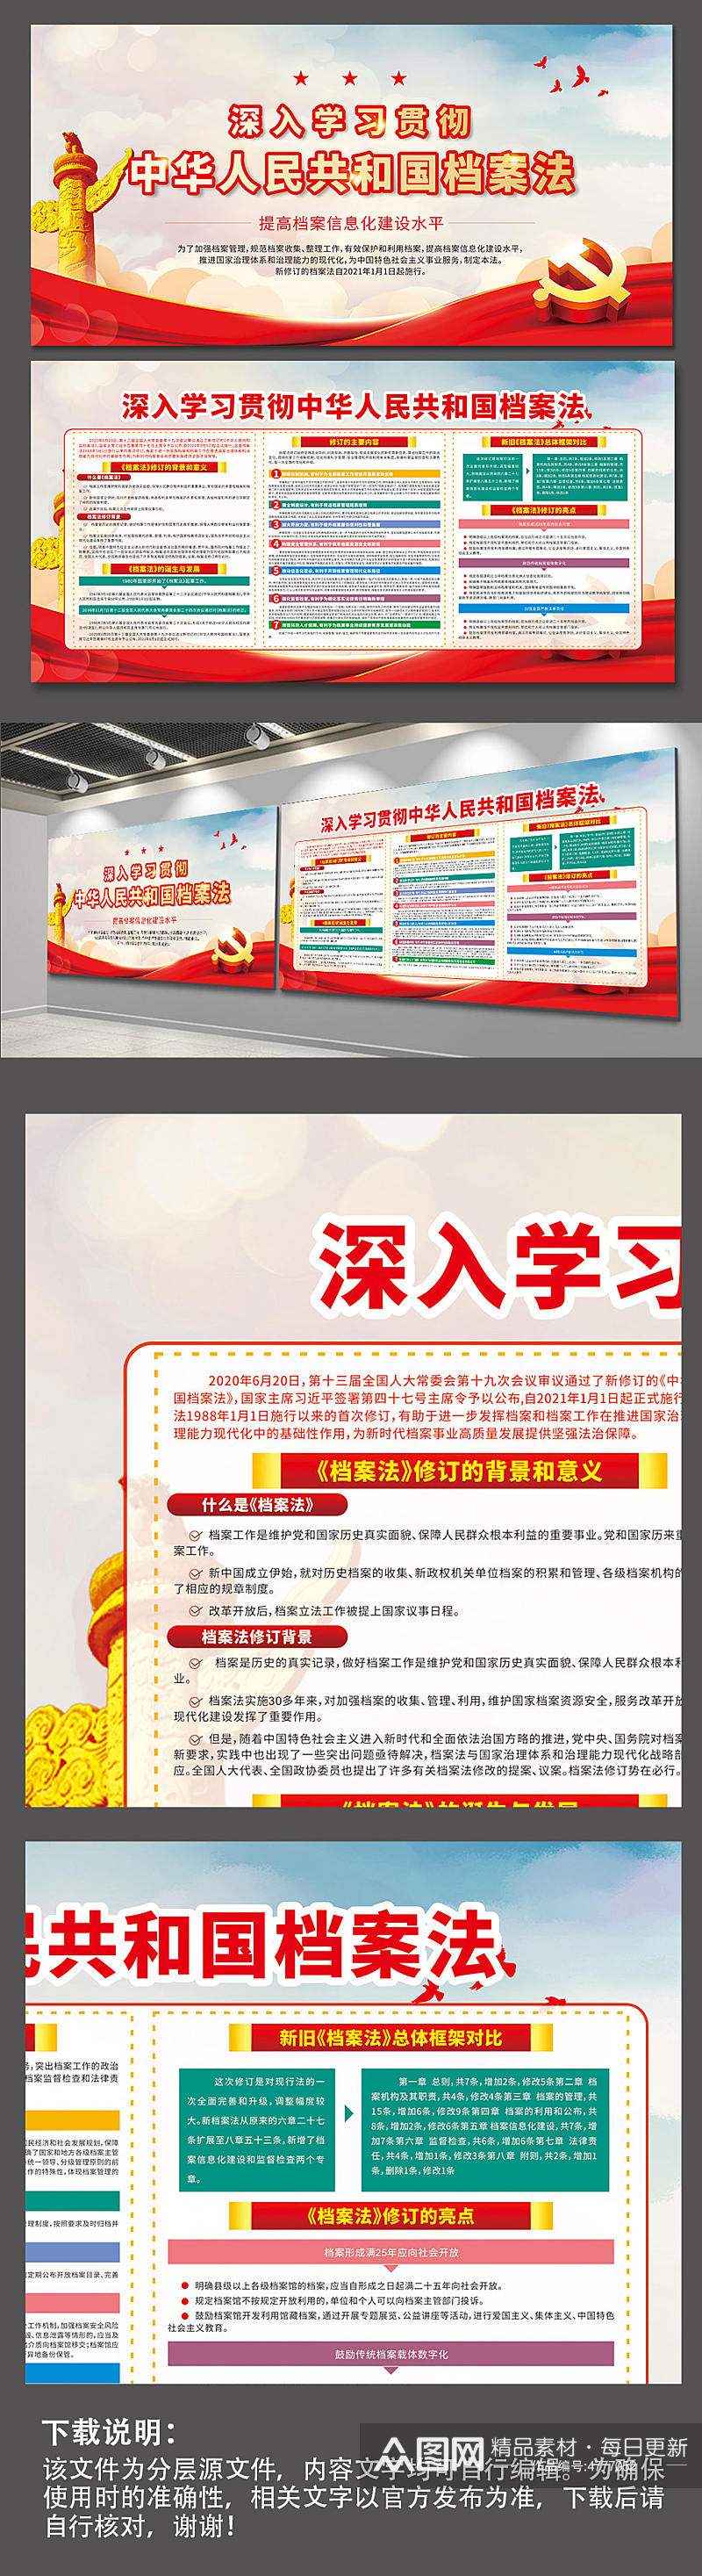 学习贯彻中华人民共和国档案法展板宣传栏素材